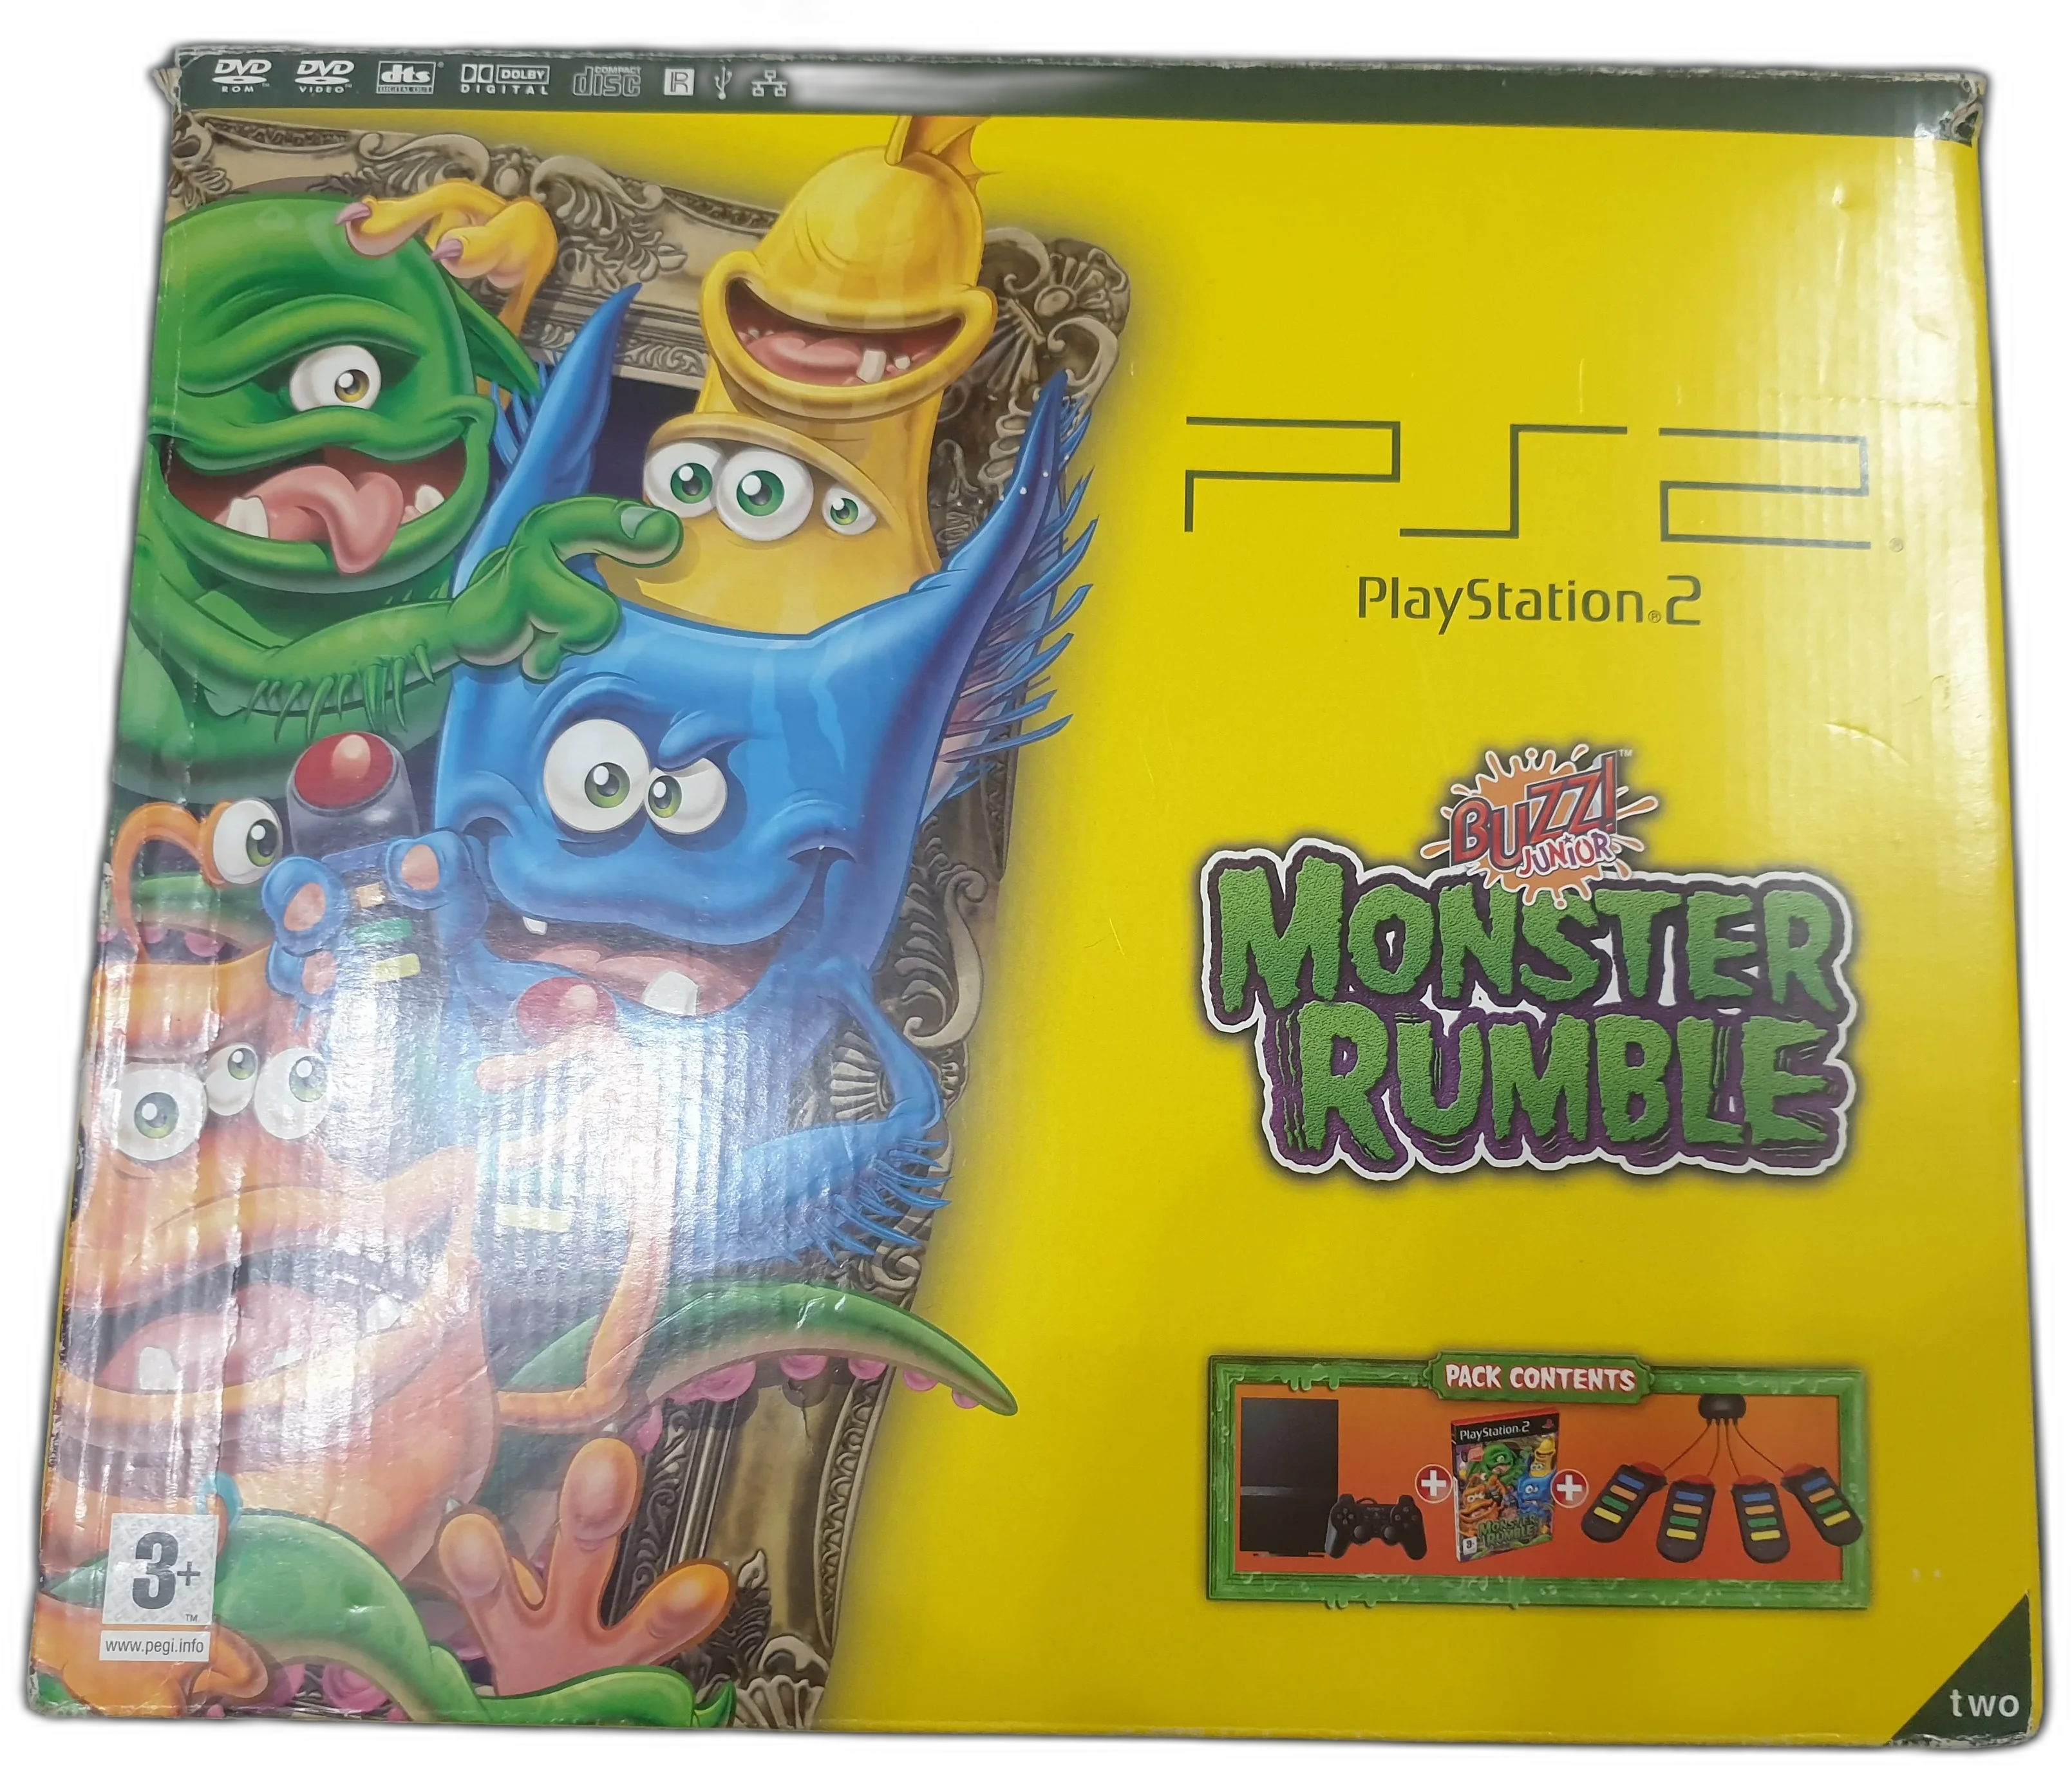  Sony PlayStation 2 Slim Monster Rumble Bundle